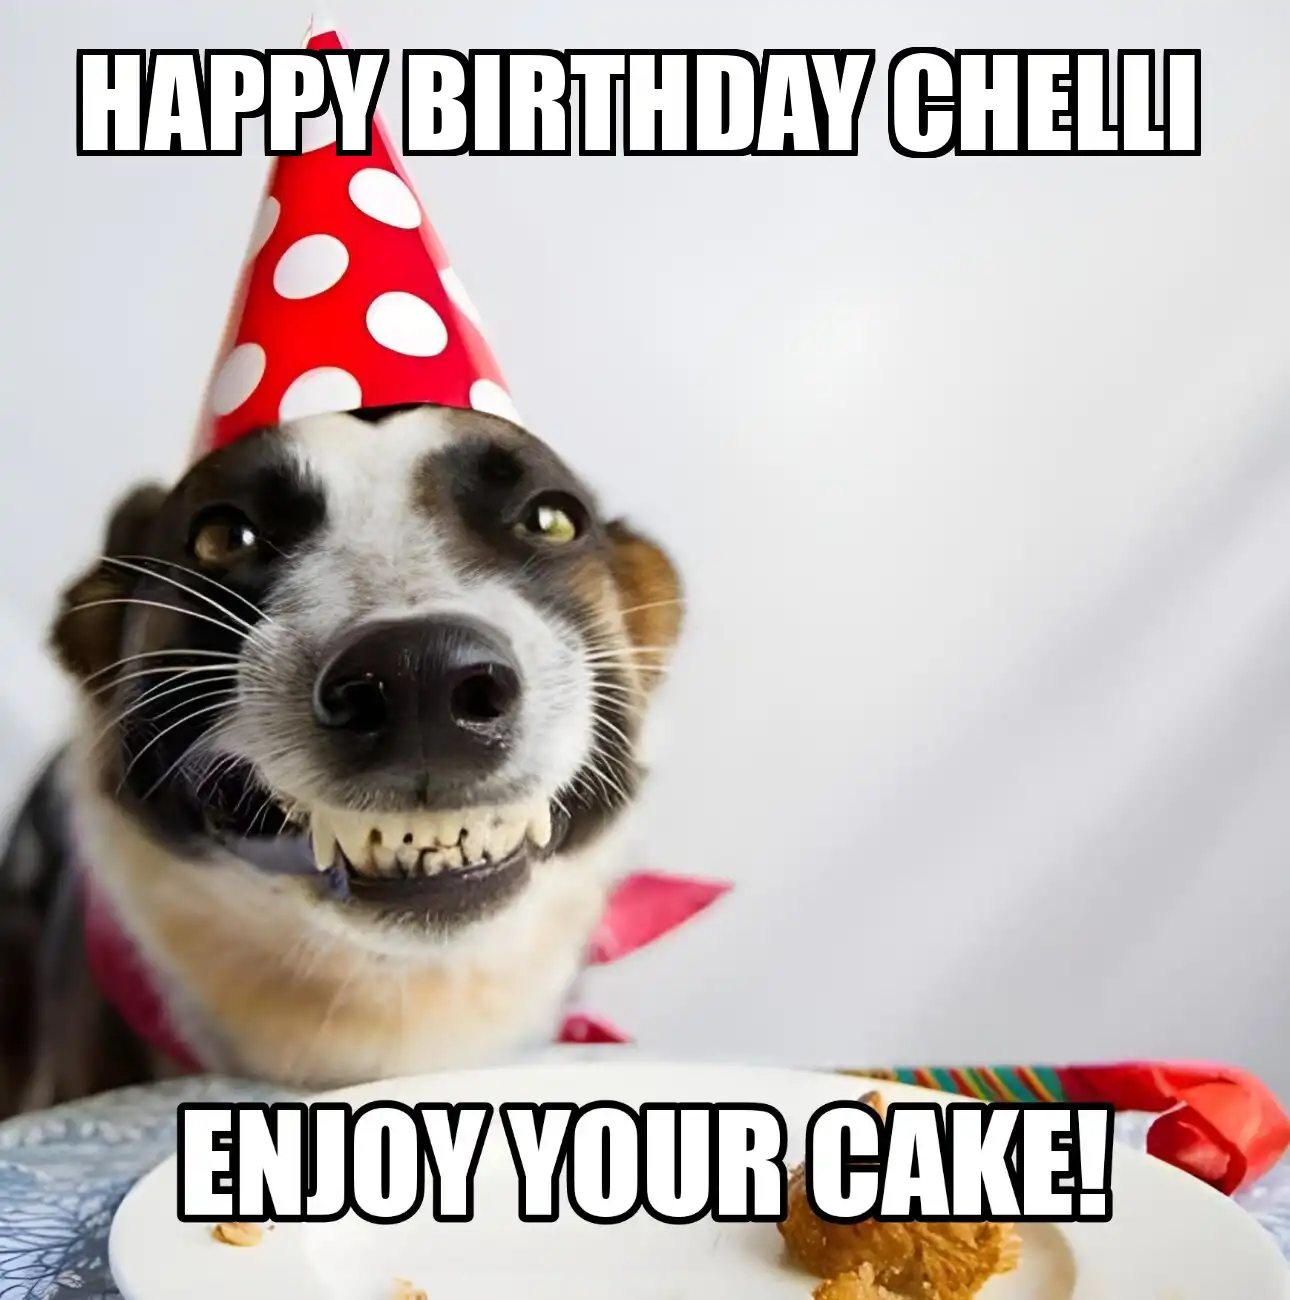 Happy Birthday Chelli Enjoy Your Cake Dog Meme